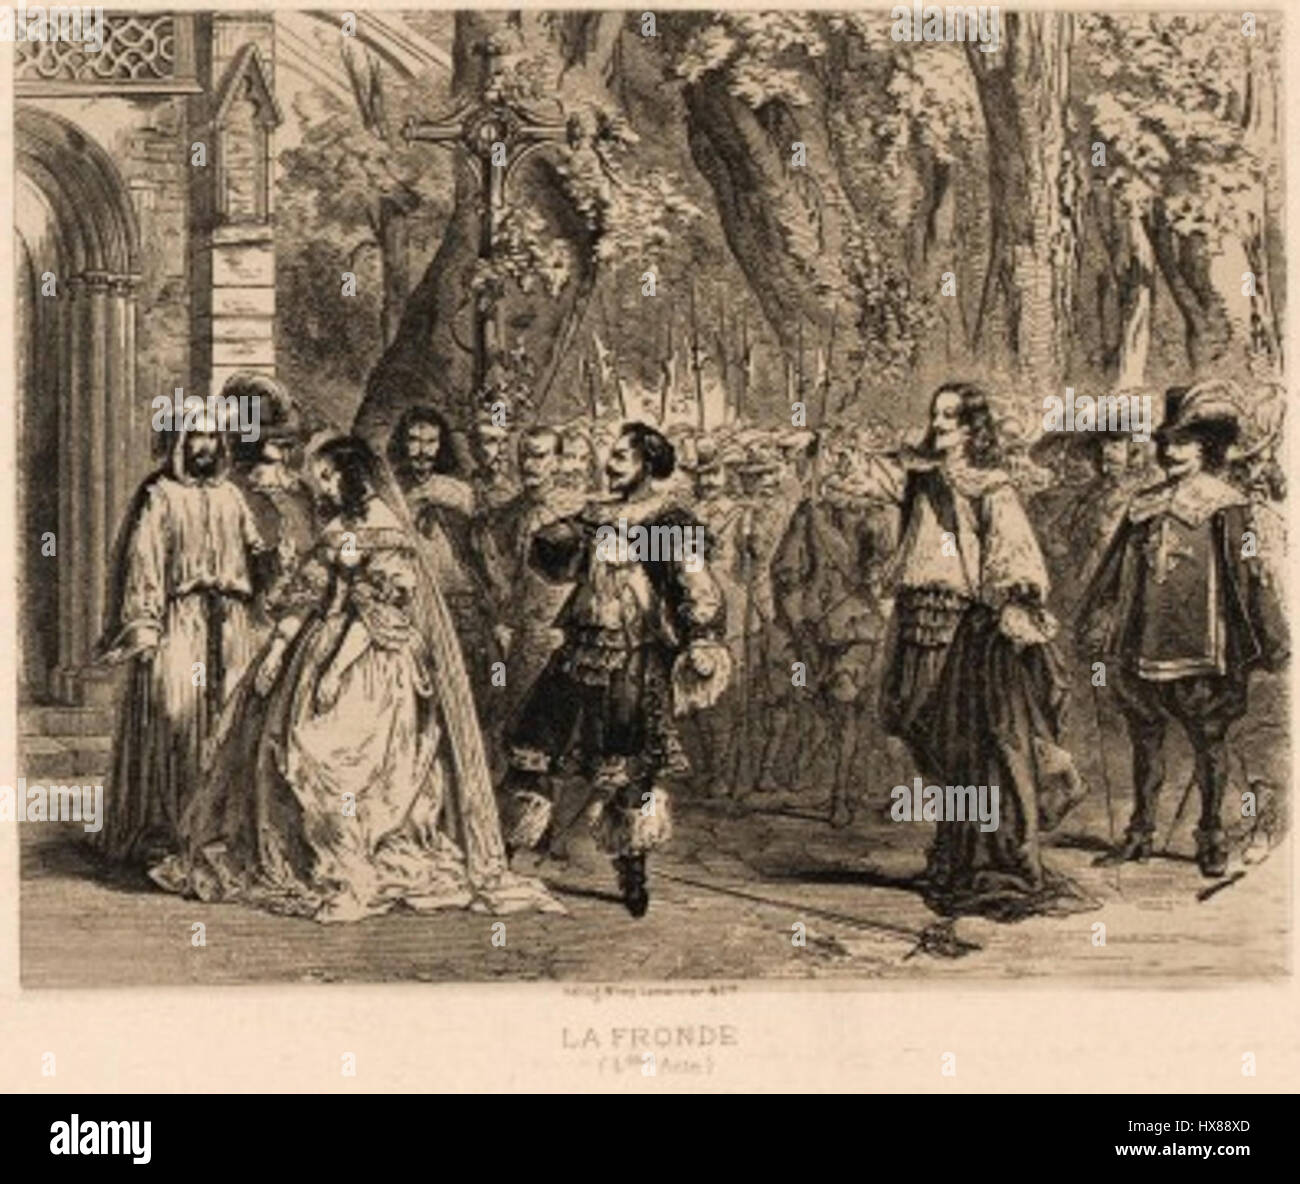 La Fronde : de la révolte parlementaire à celle des princes